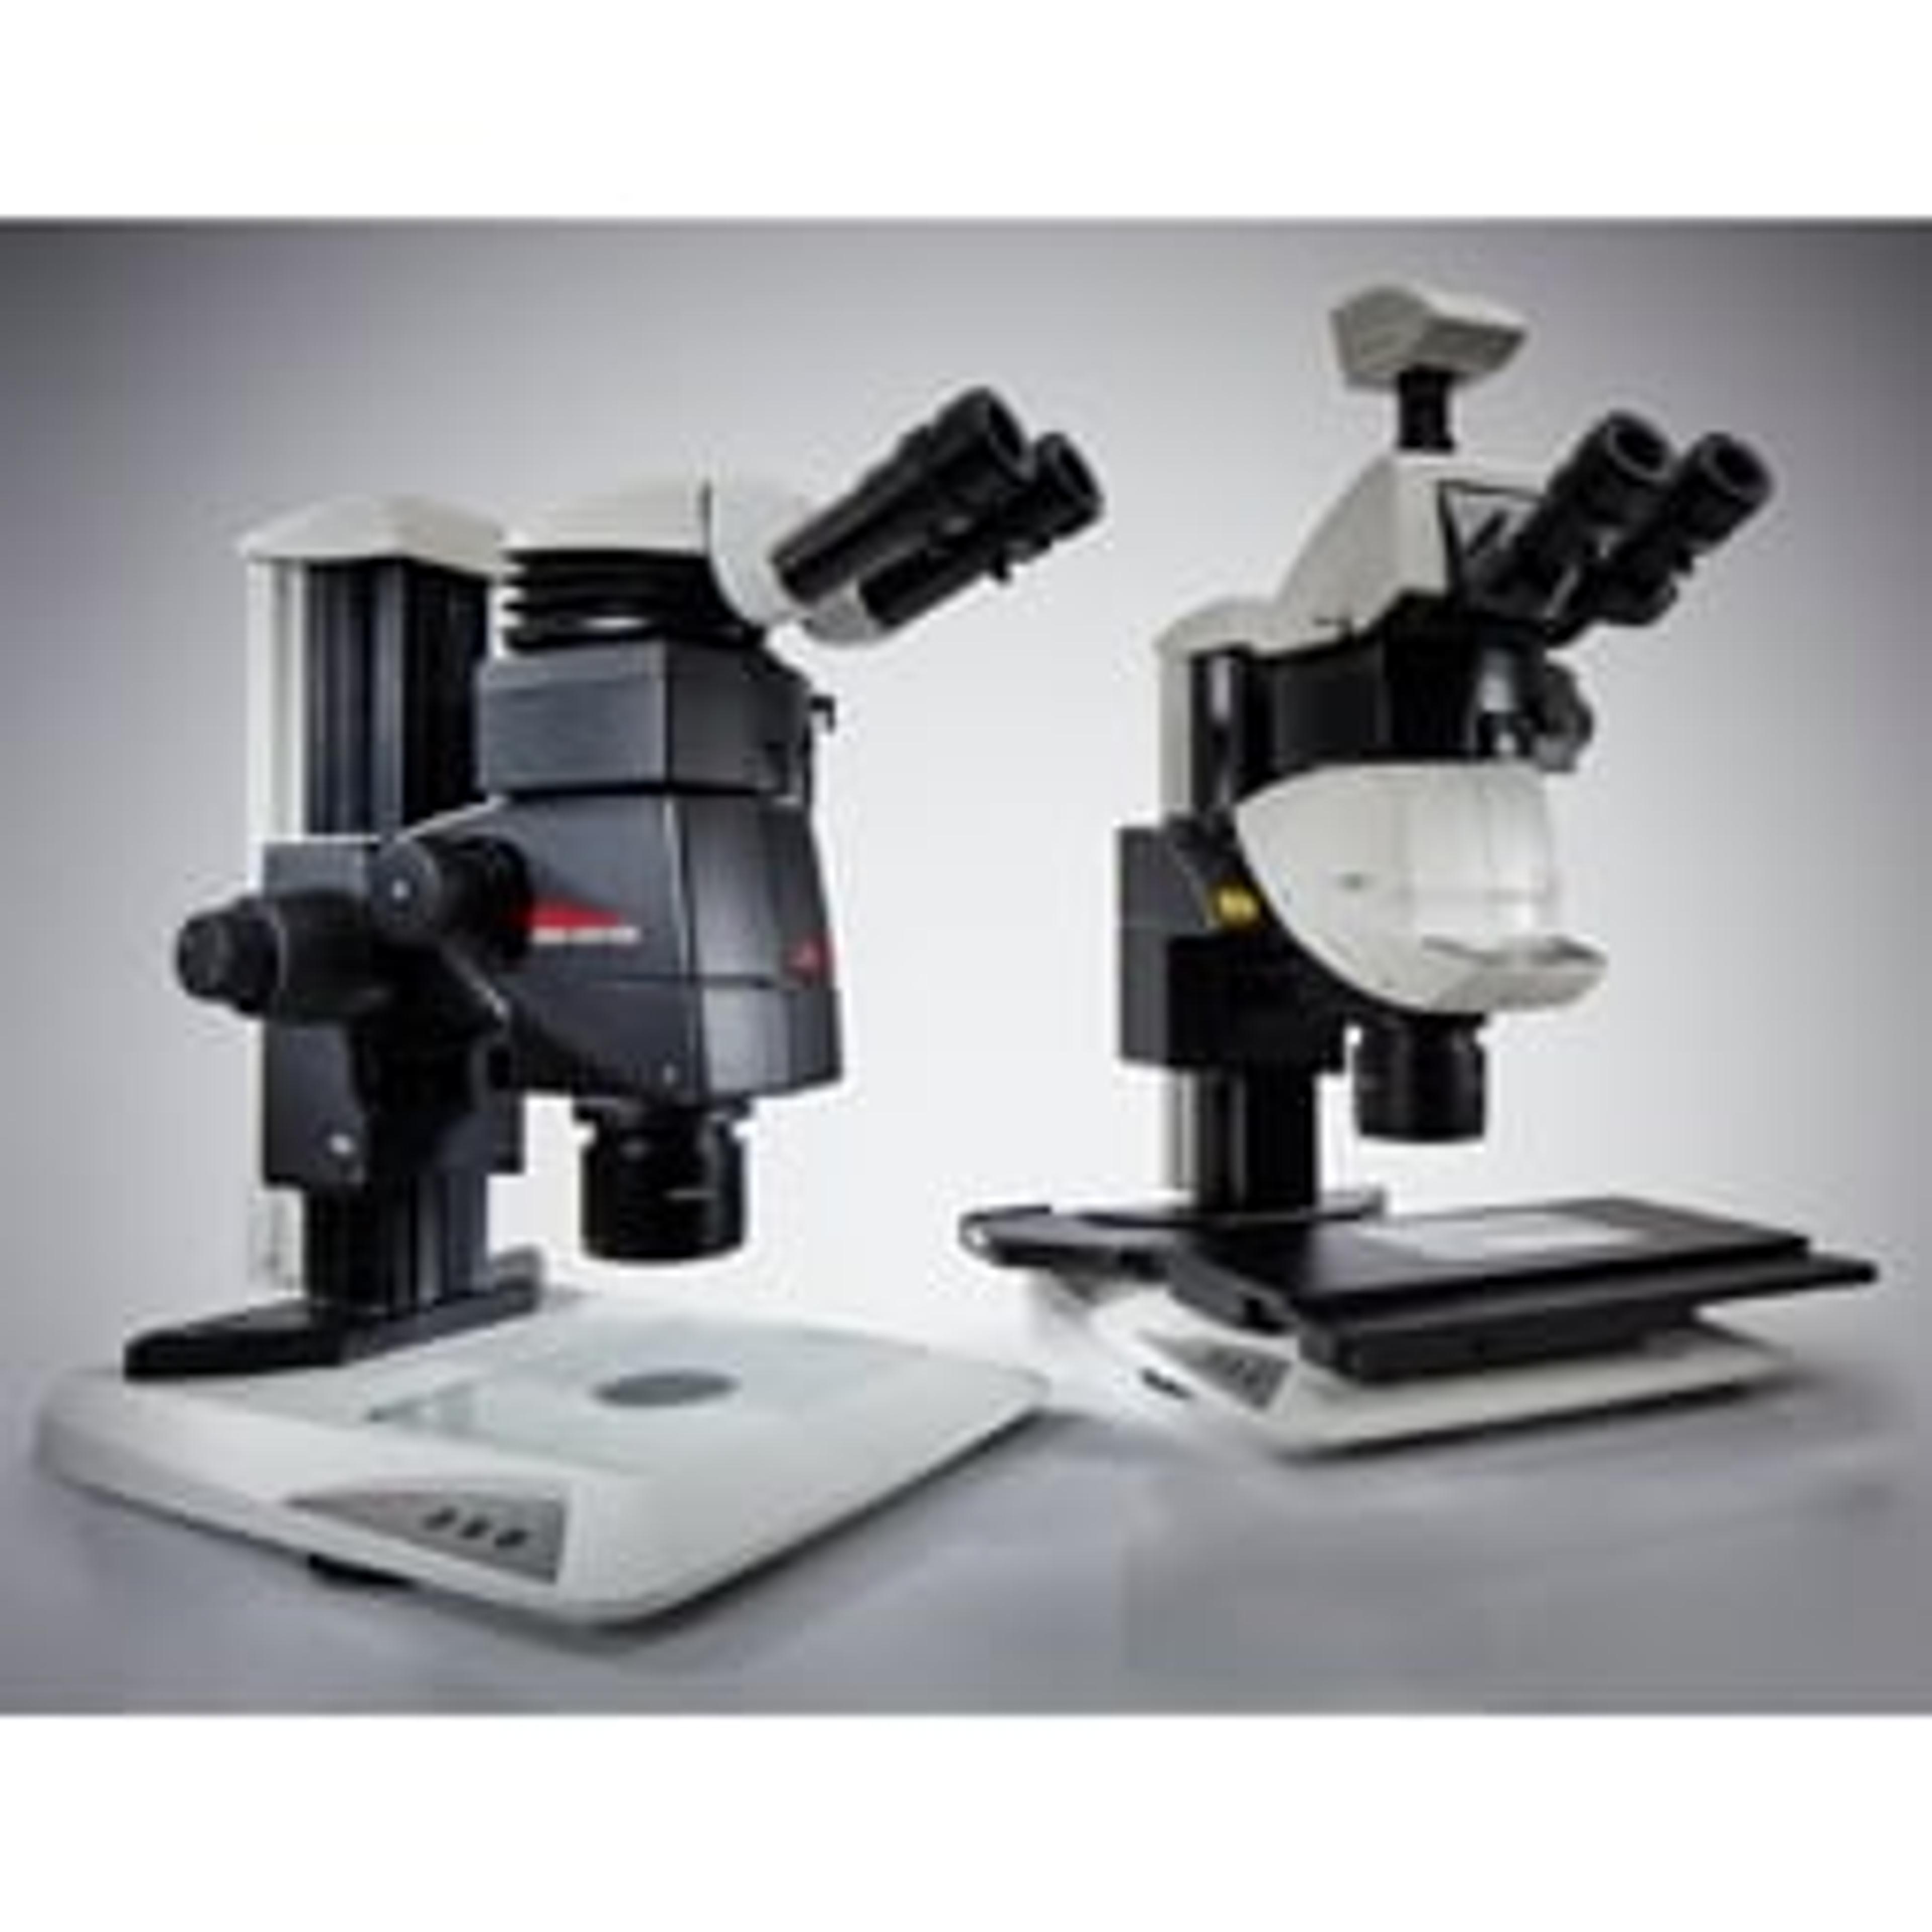 Leica M205 FA and M205 FCA microscopes